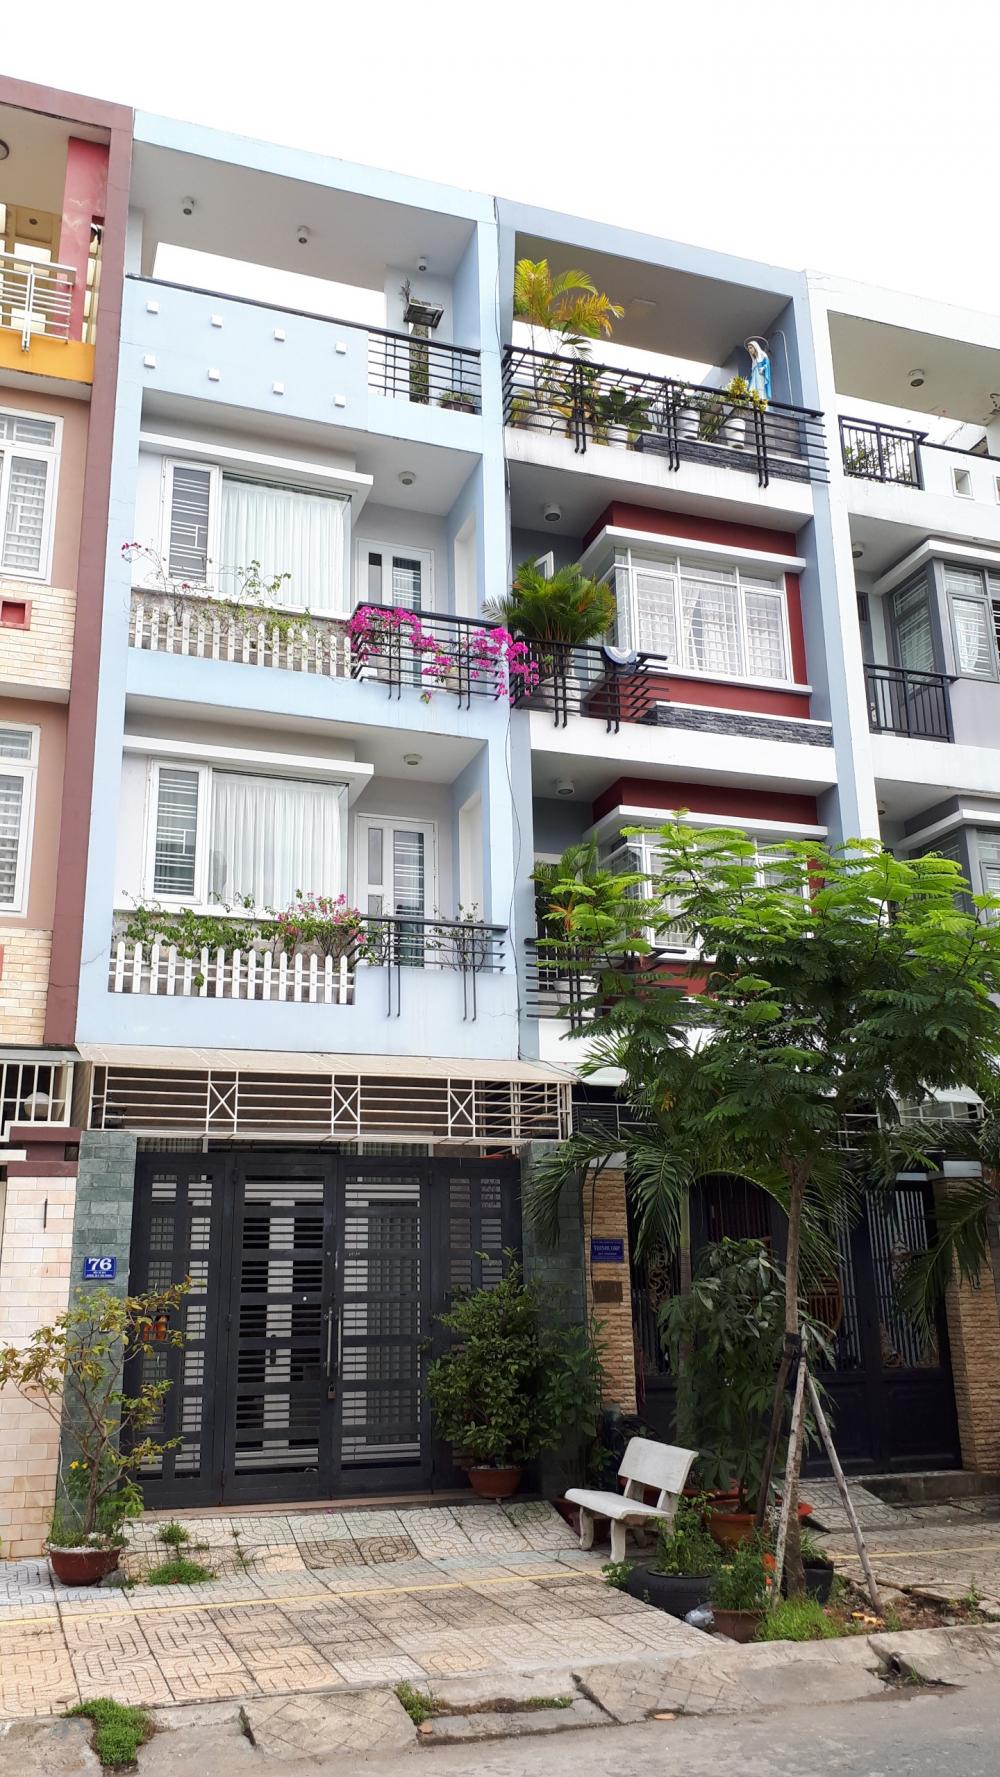 Bán nhà đẹp, 2 lầu, đường 40, view công viên, KDC An Phú Hưng, phường Tân Phong, quận 7